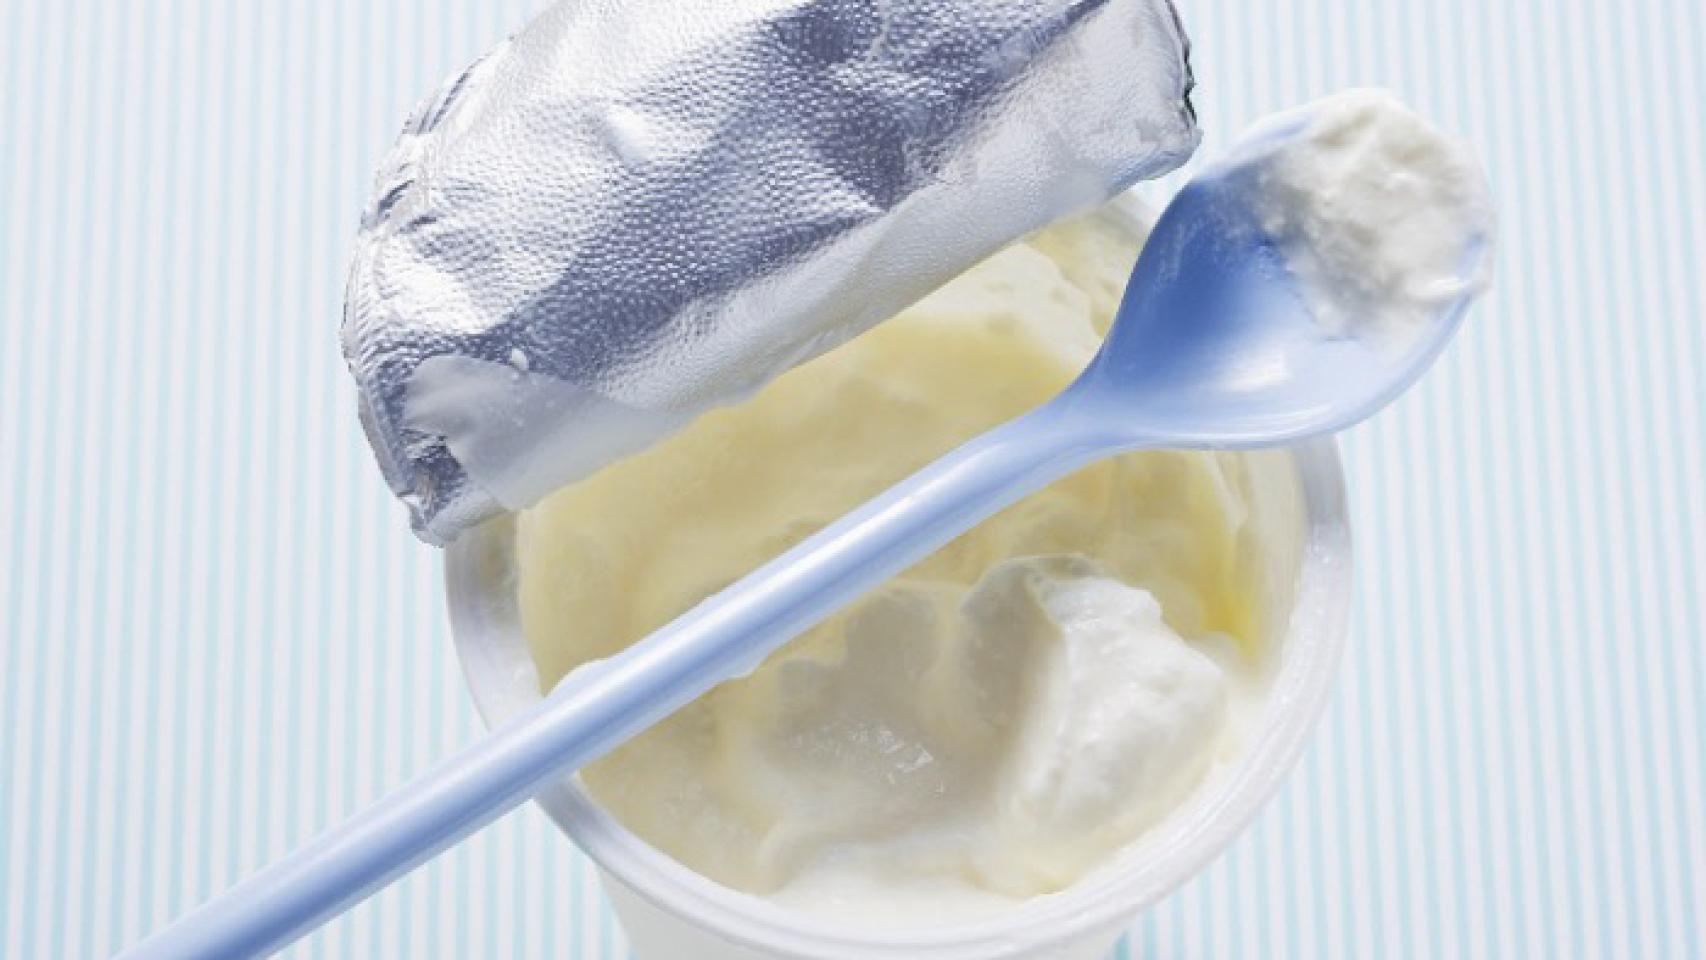 PEORES YOGURES SUPERMERCADO: Descubre por qué los médicos desaconsejan  consumir estos yogures